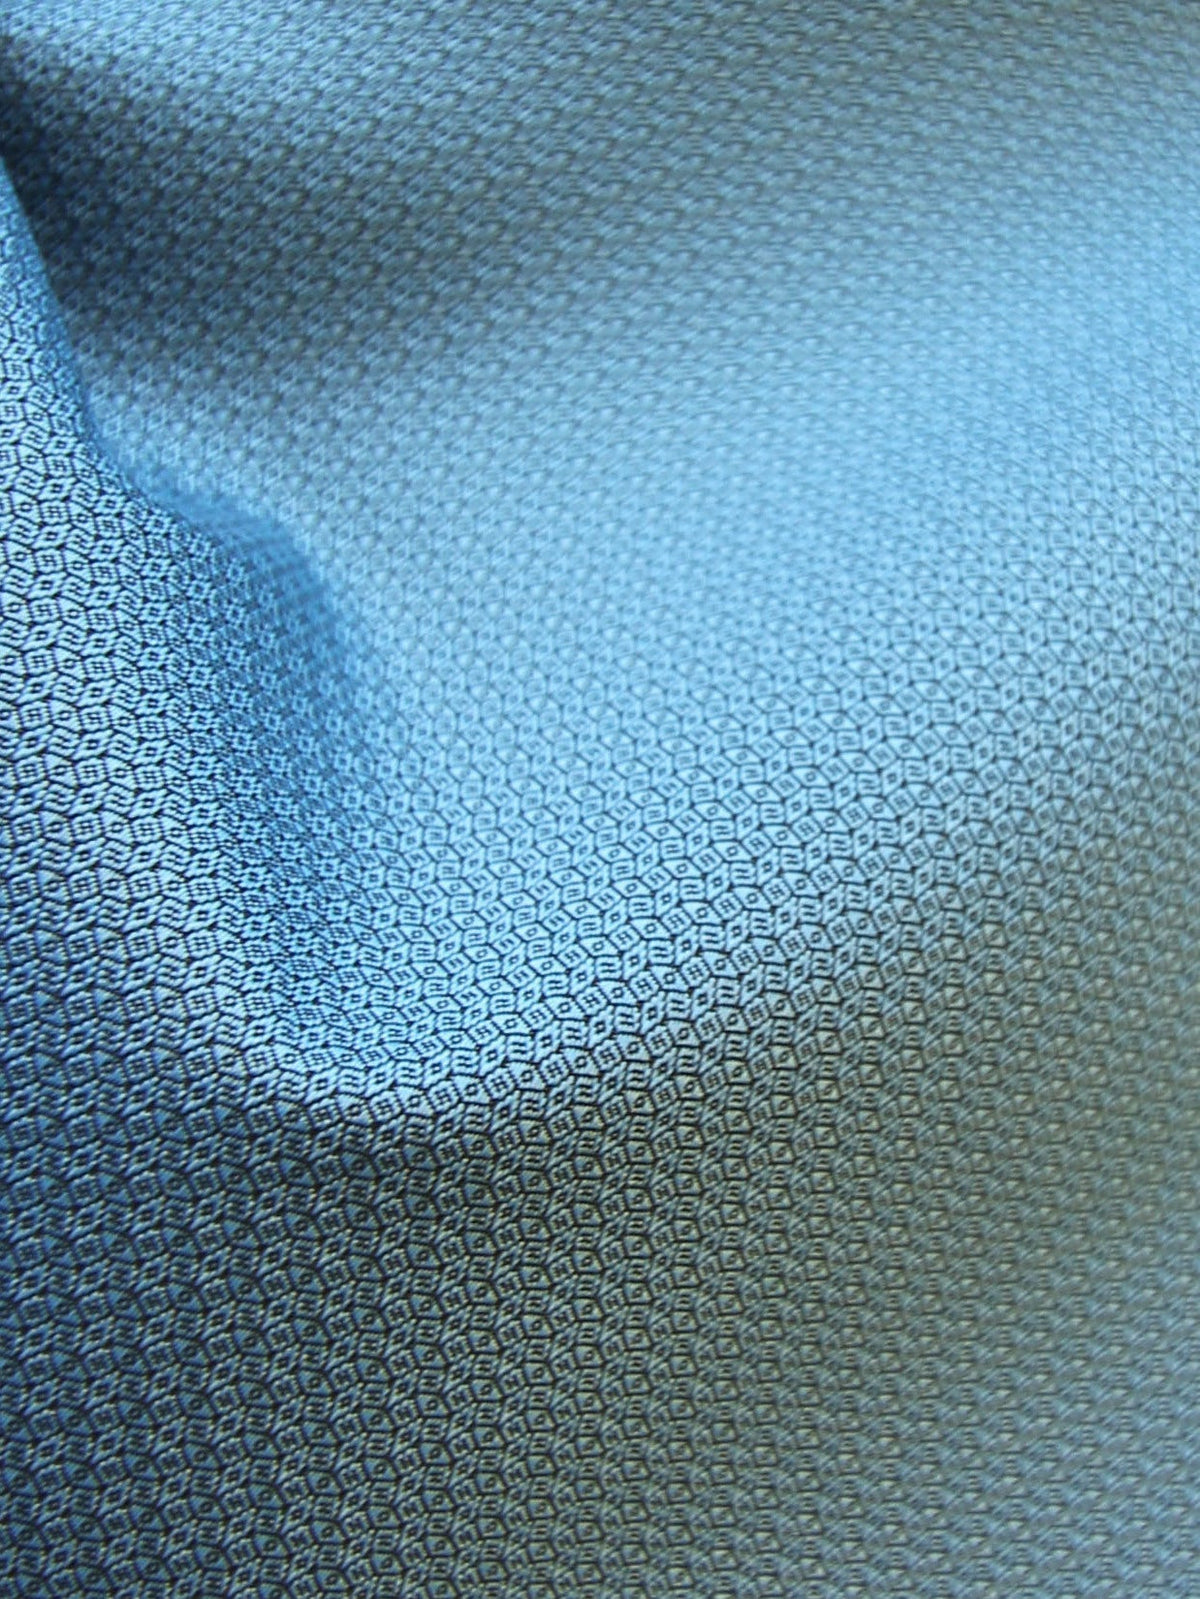 Blue Waistcoat Fabric - Aberdeen